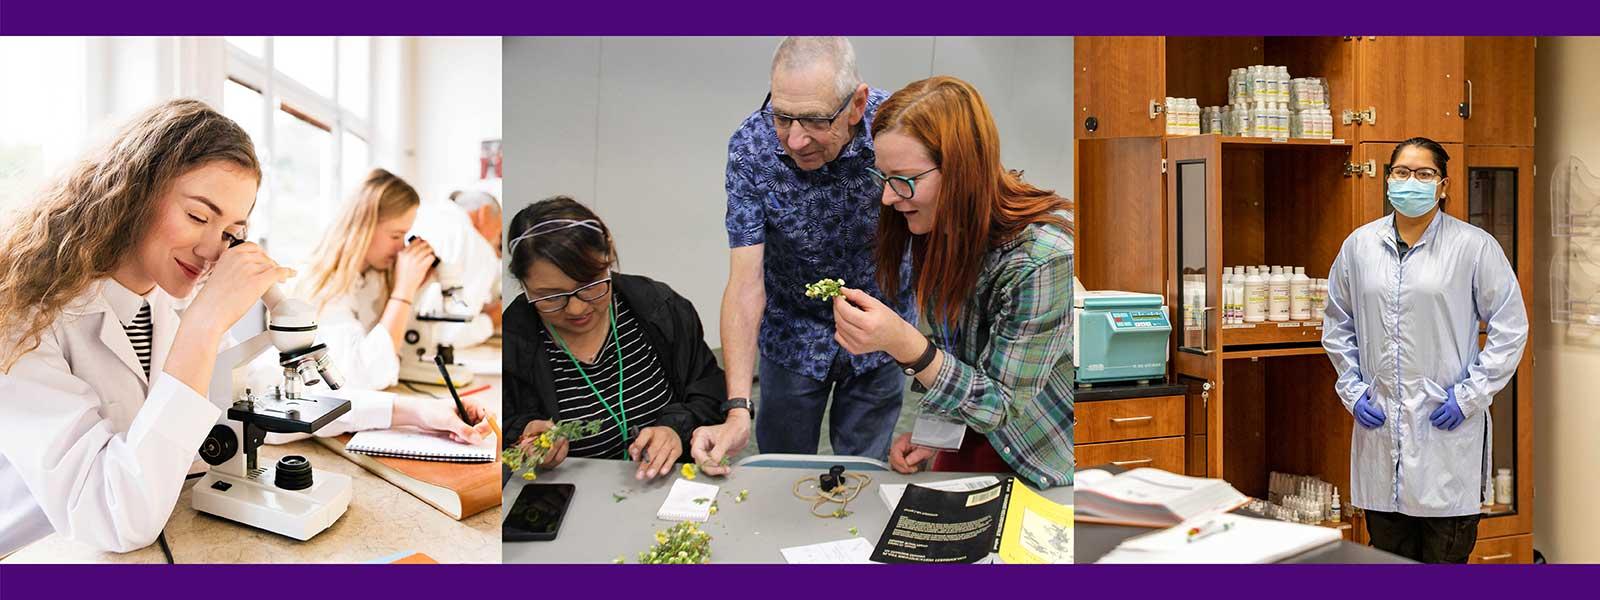 学生在实验室里戴着安全装备, 学生和老师正在检查植物, 学生在看显微镜